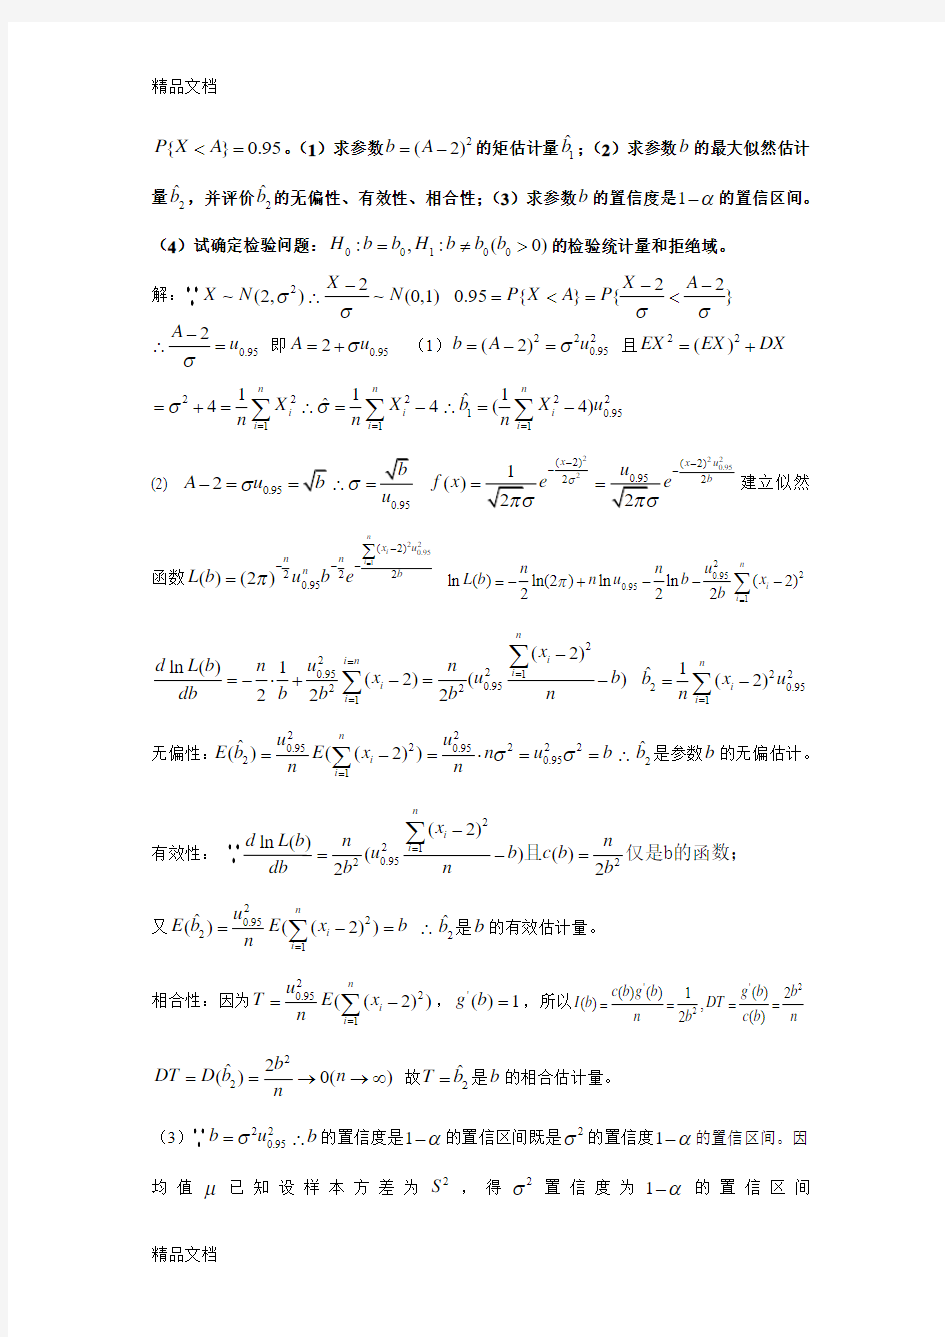 最新重庆大学-2014学年(秋)数理统计ab试题与答案